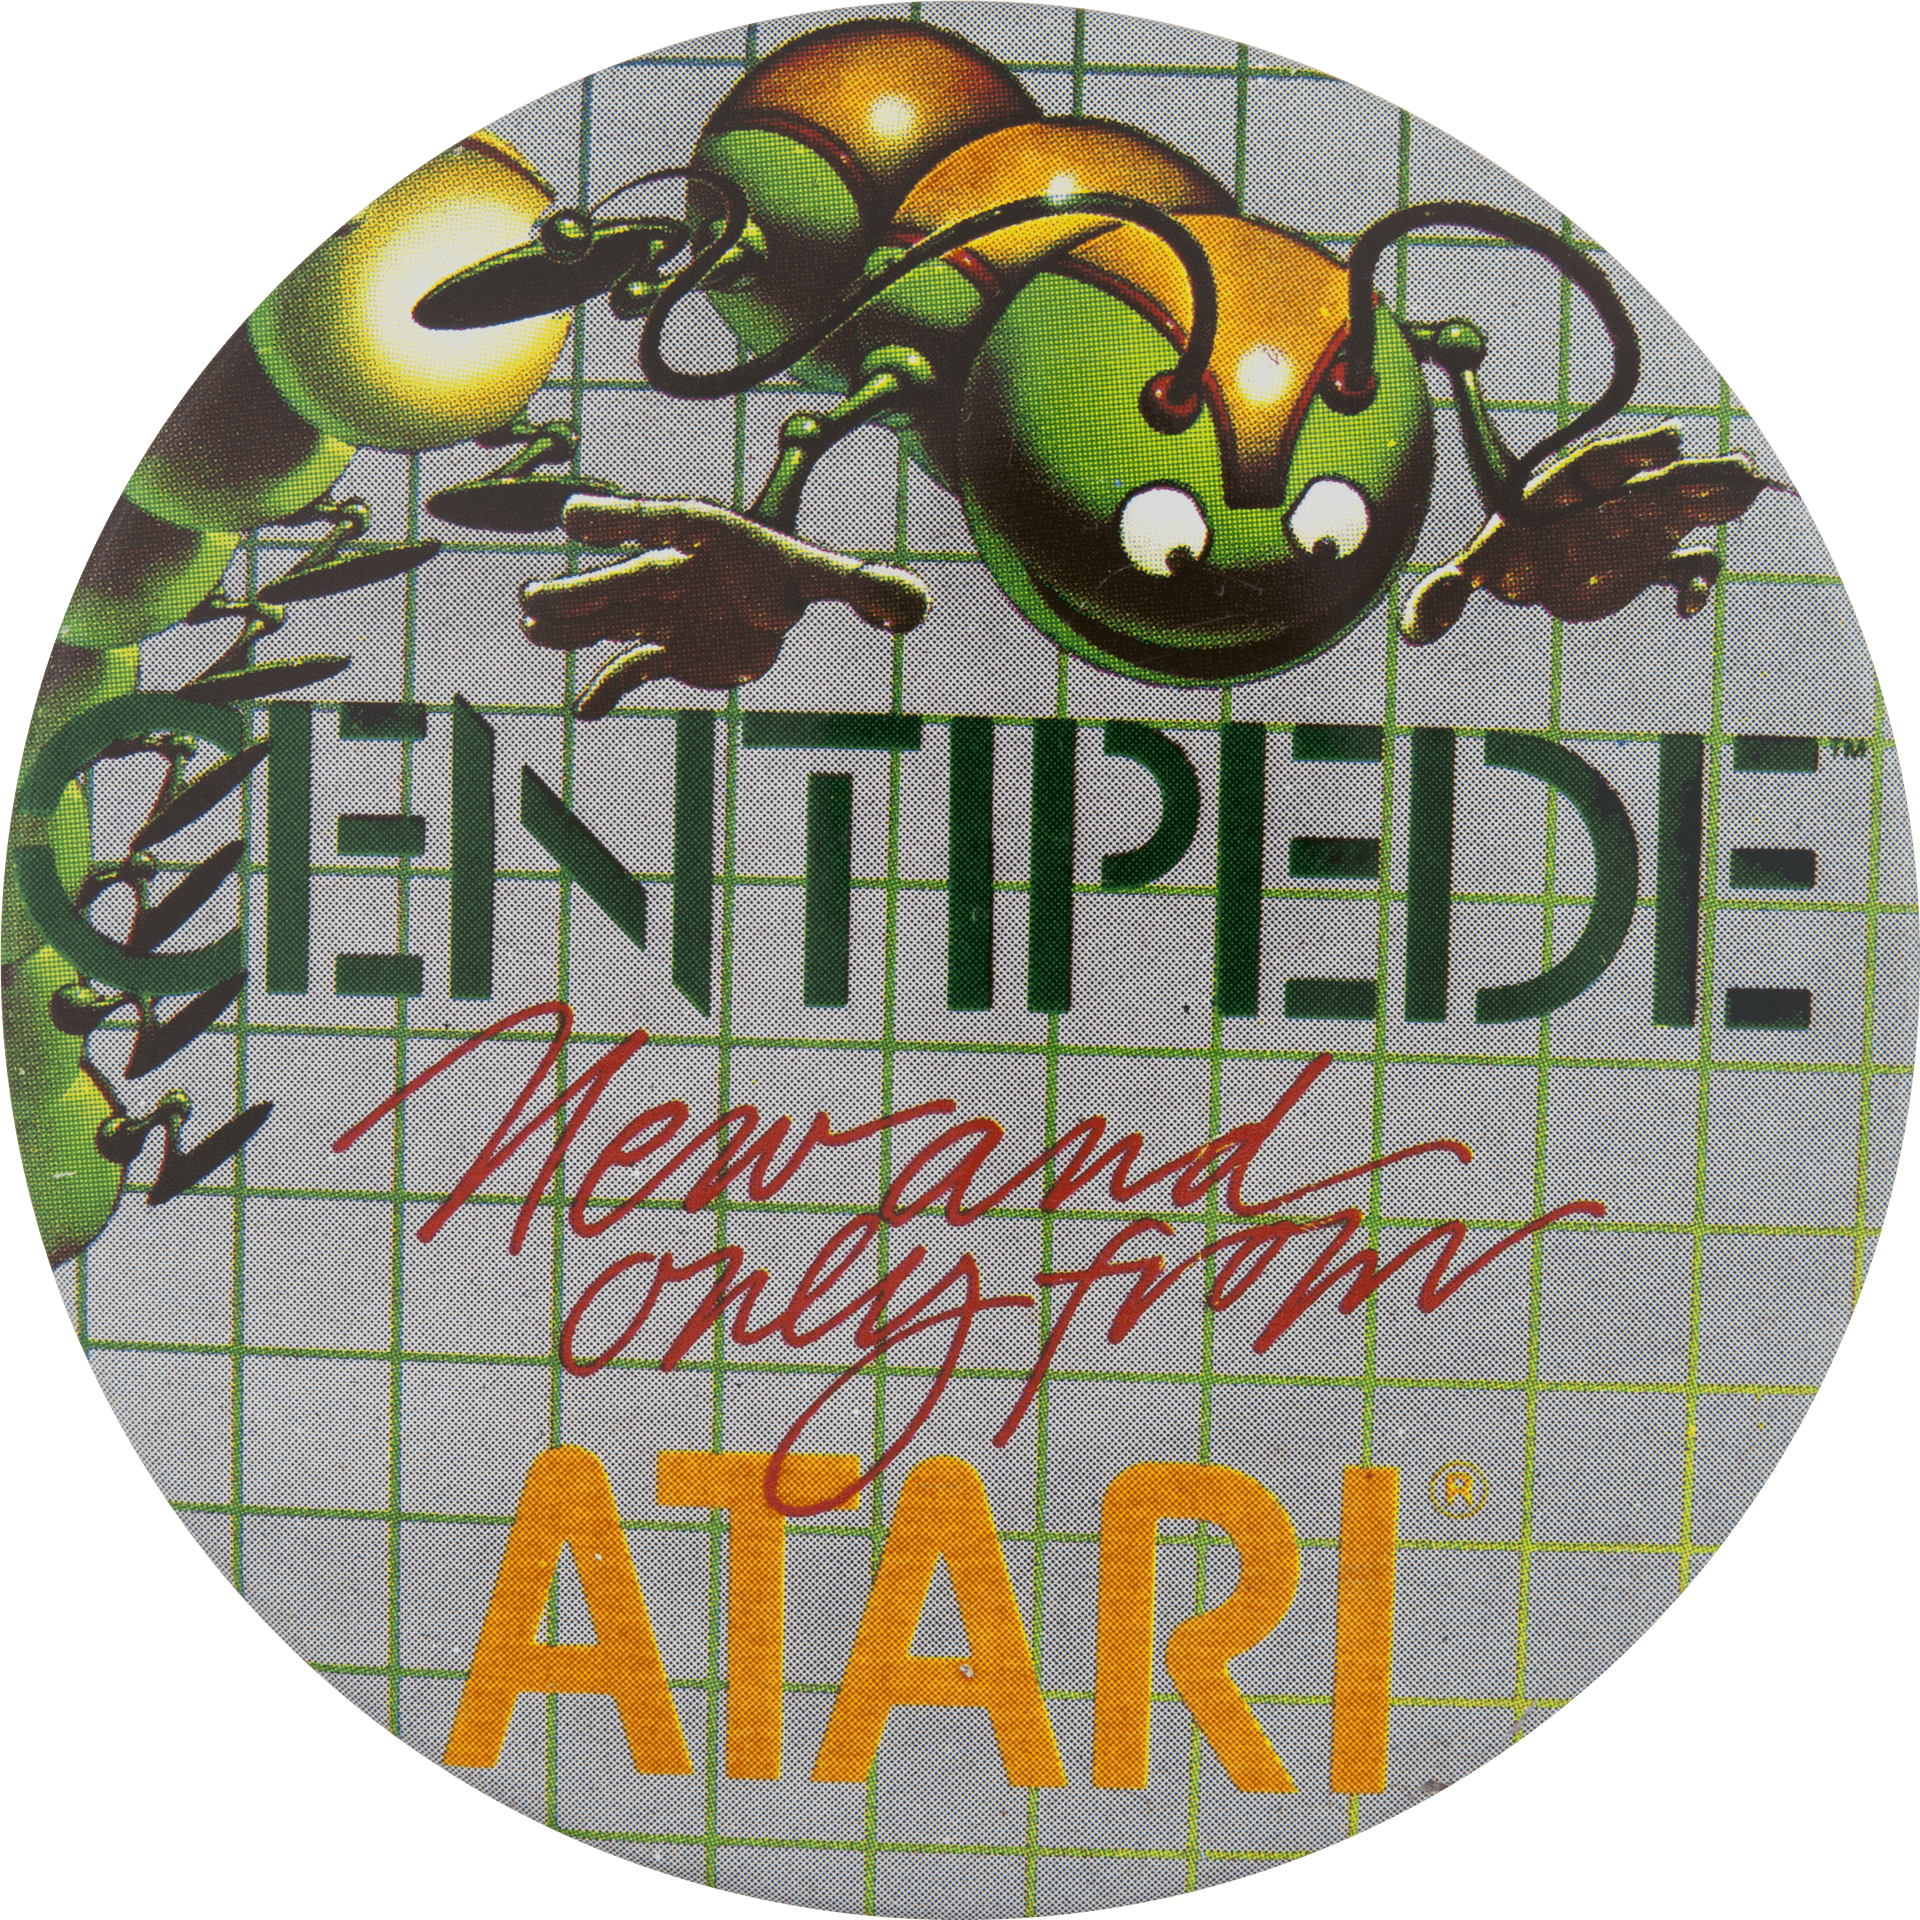 Atari Centipede Classic Arcade Game Artwork PNG